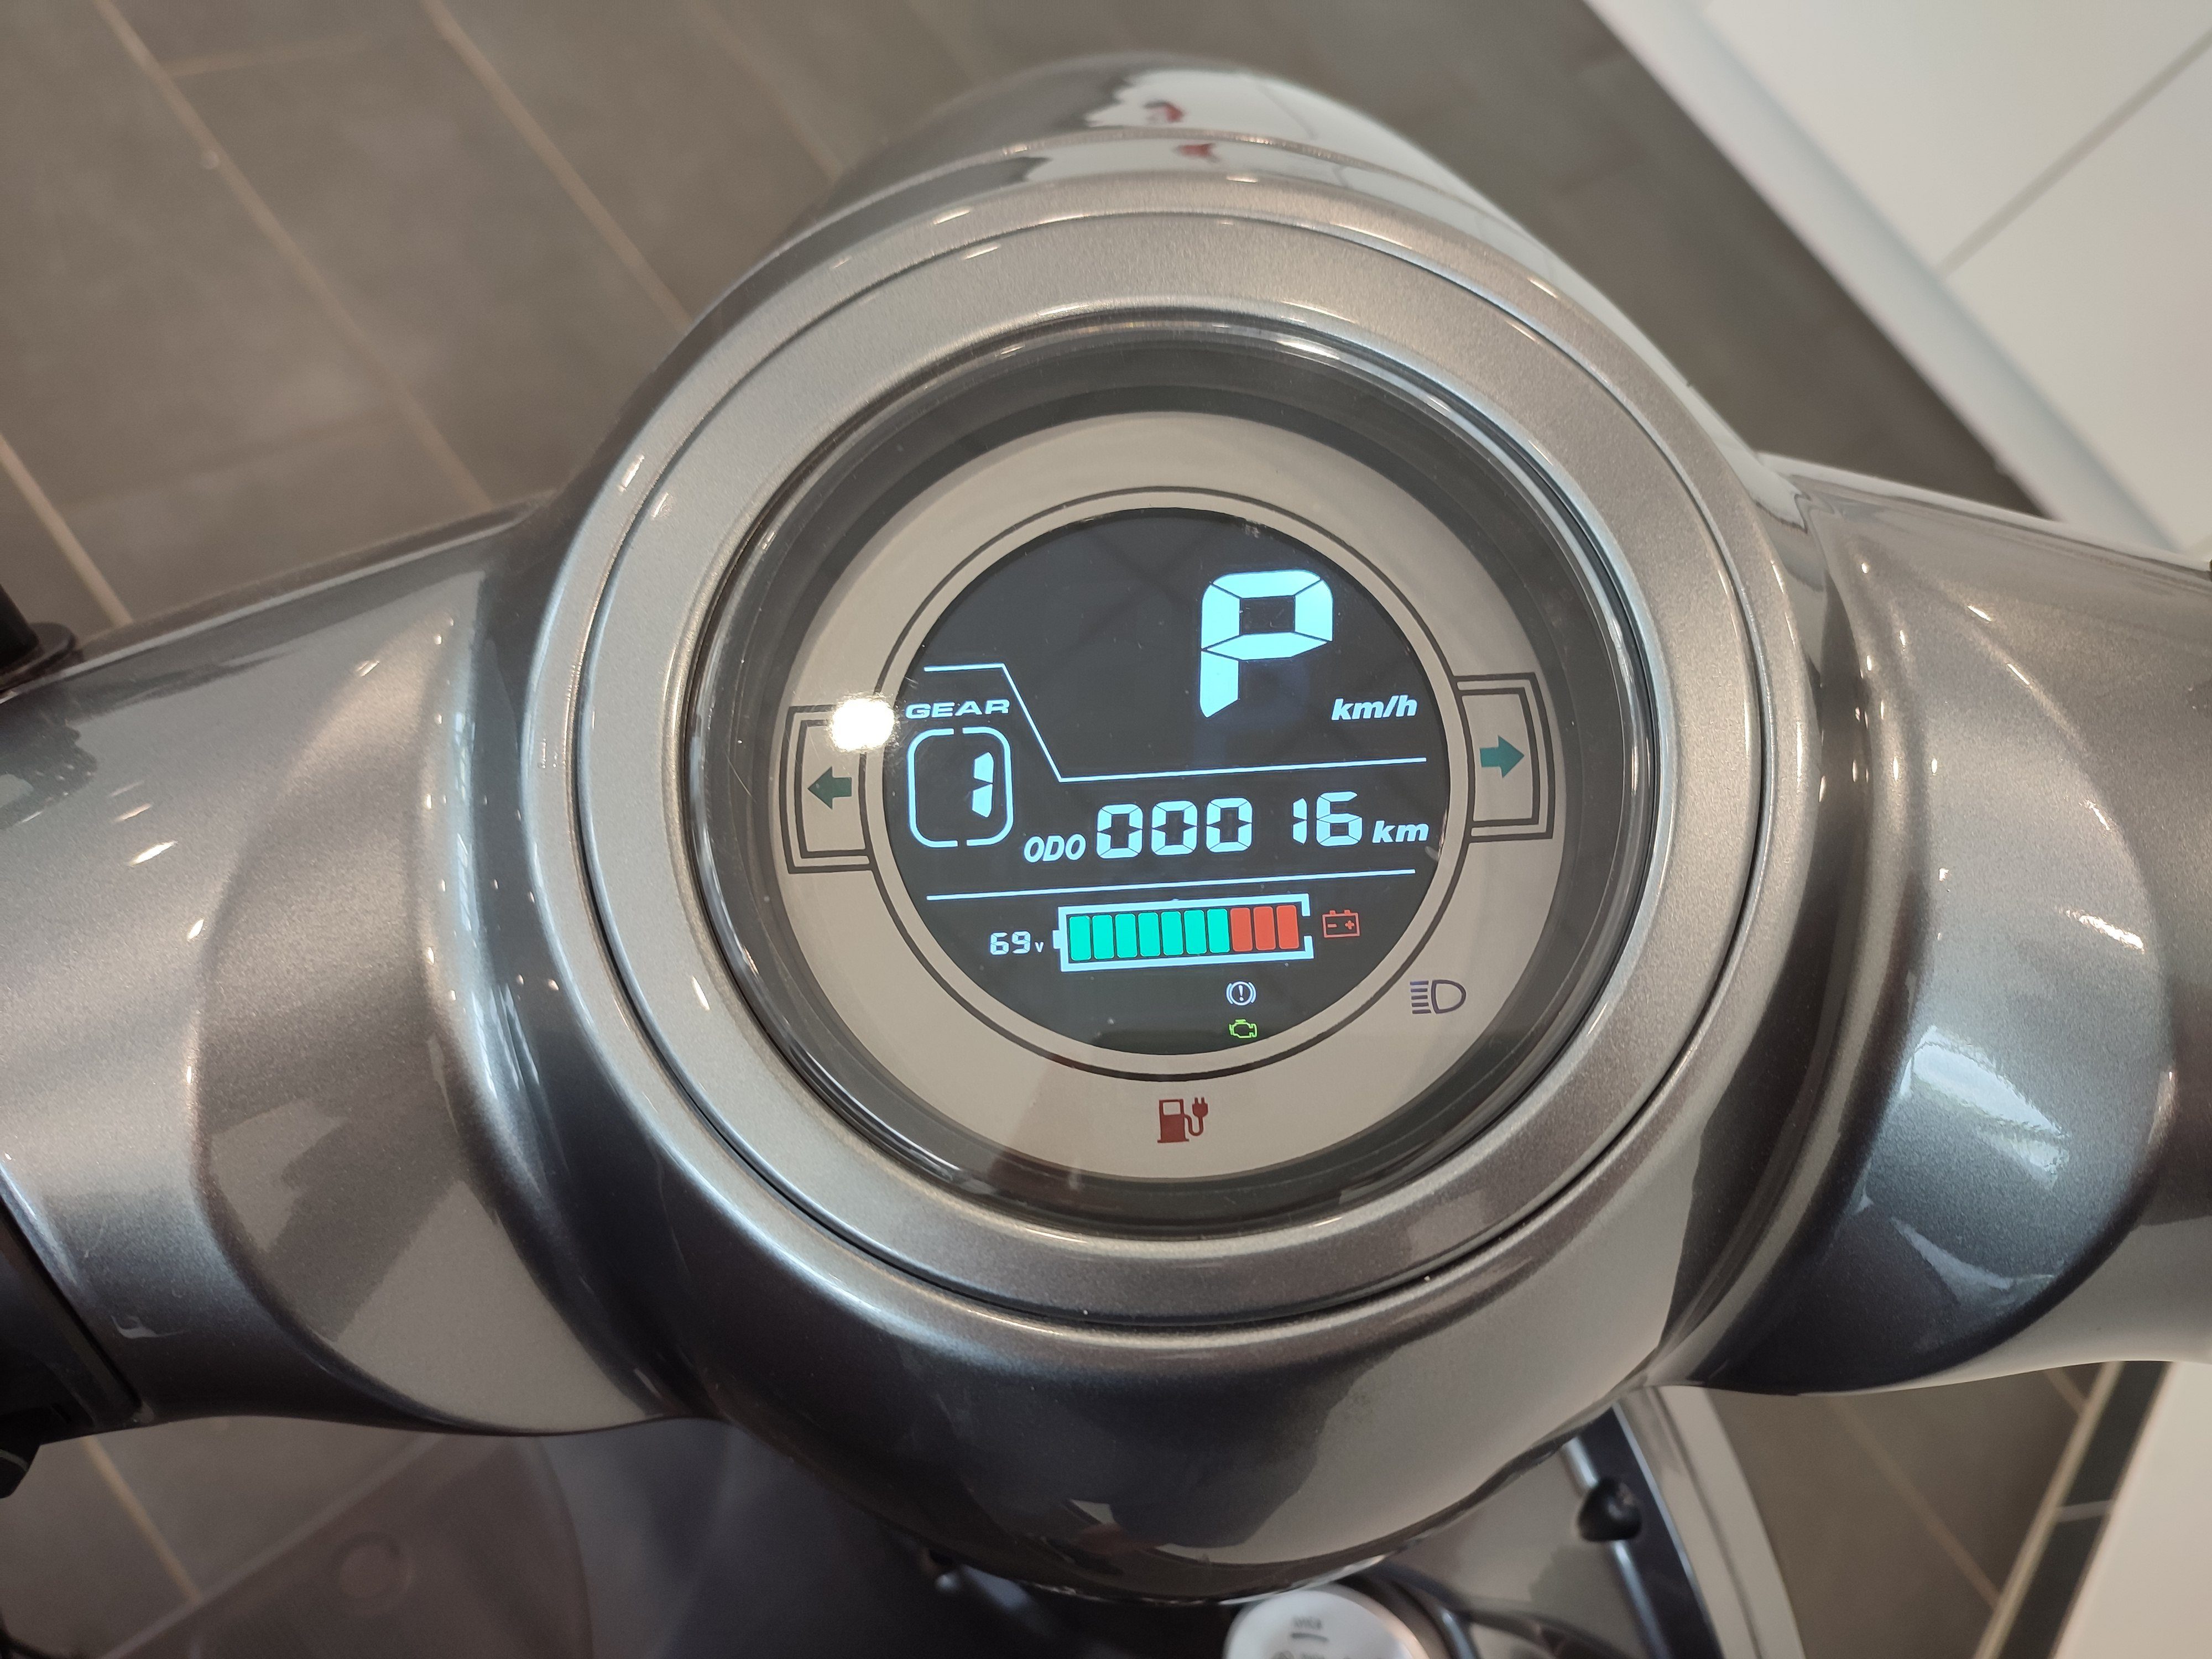 E-Motorroller 8000,00 Topcase Sun-S+, e-kuma 90 km/h, inklusive W, mattschwarz